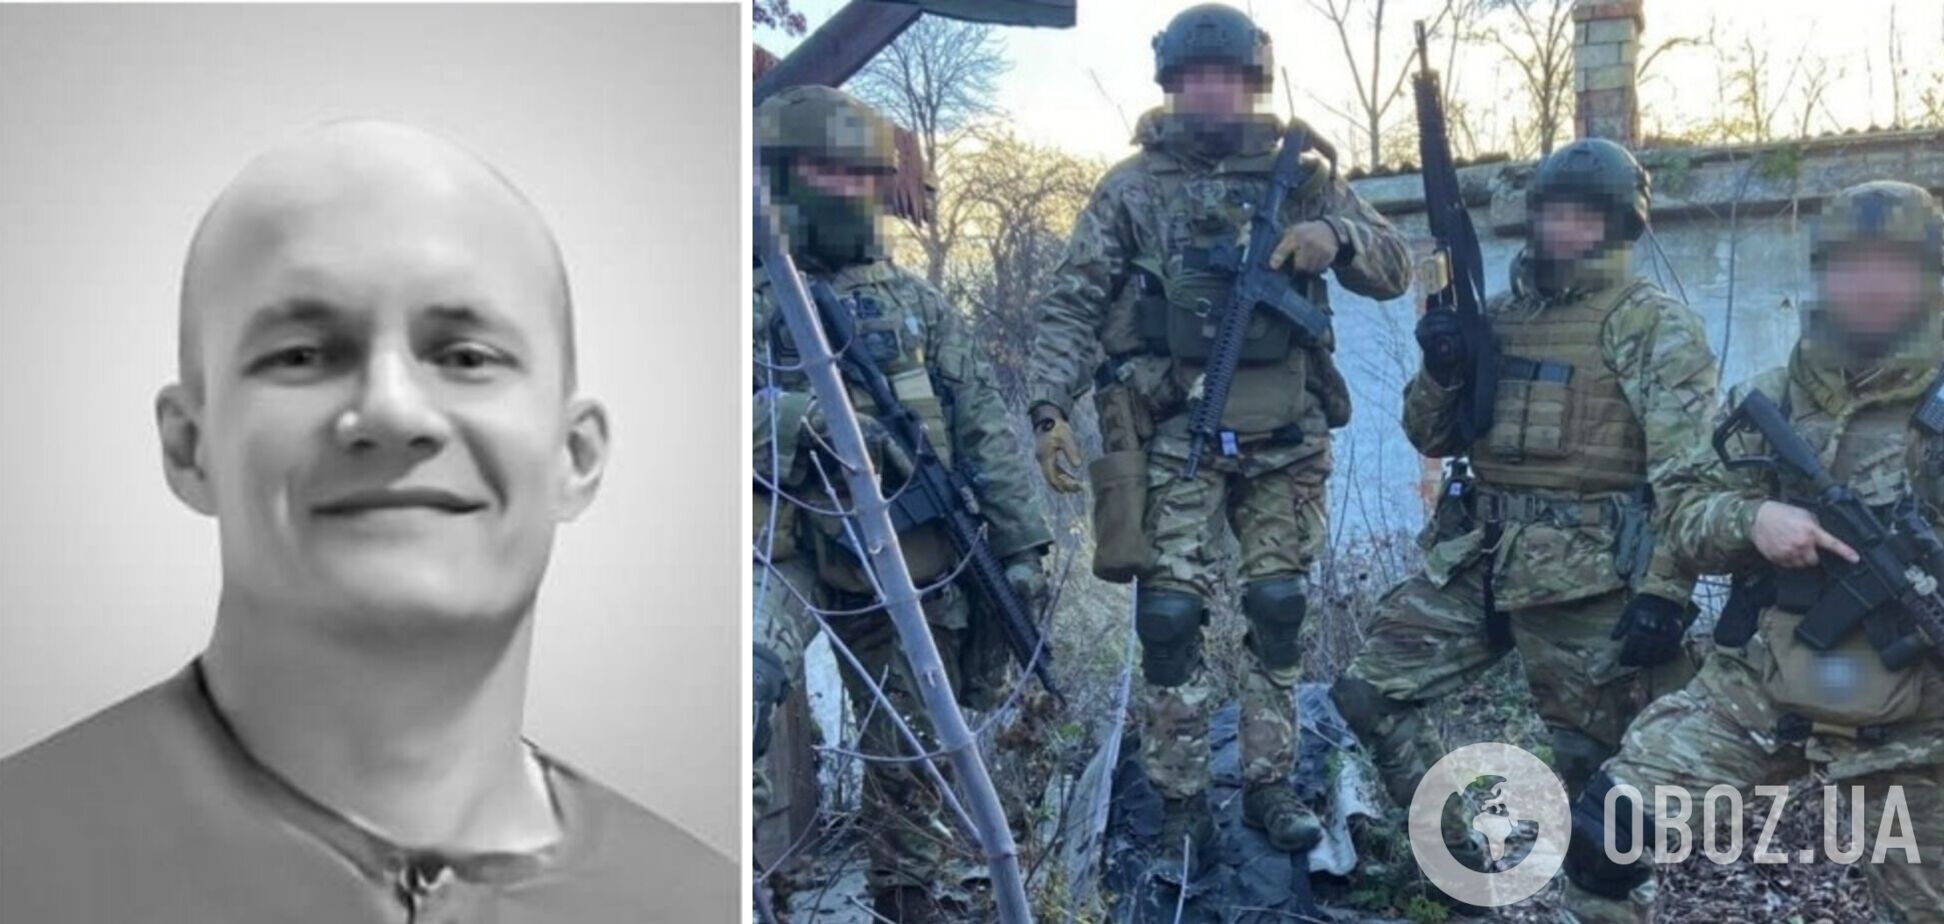 Российские пропагандисты показали фото 'ликвидированного украинского диверсанта' и эпично оконфузились: на снимке был 'вагнеровец'